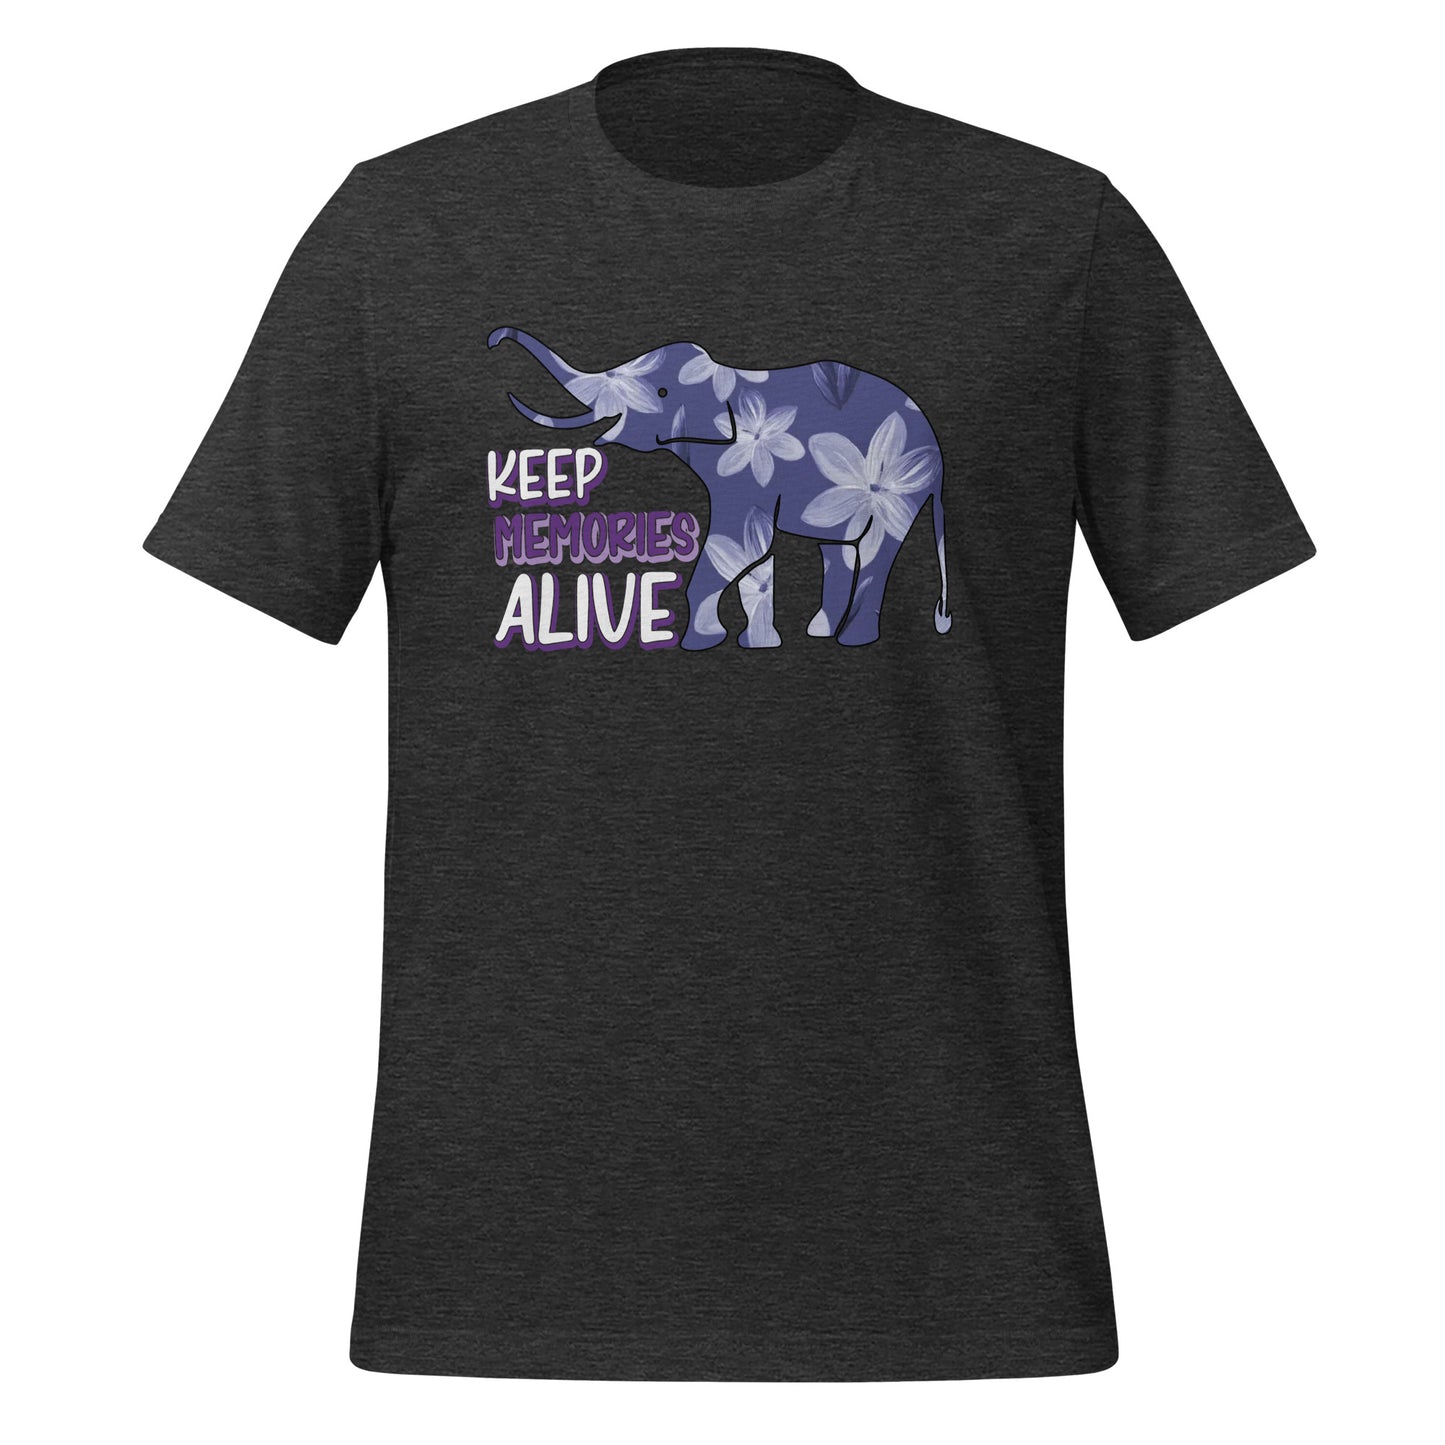 Alzheimer's Awareness Quality Cotton Bella Canvas Adult T-Shirt